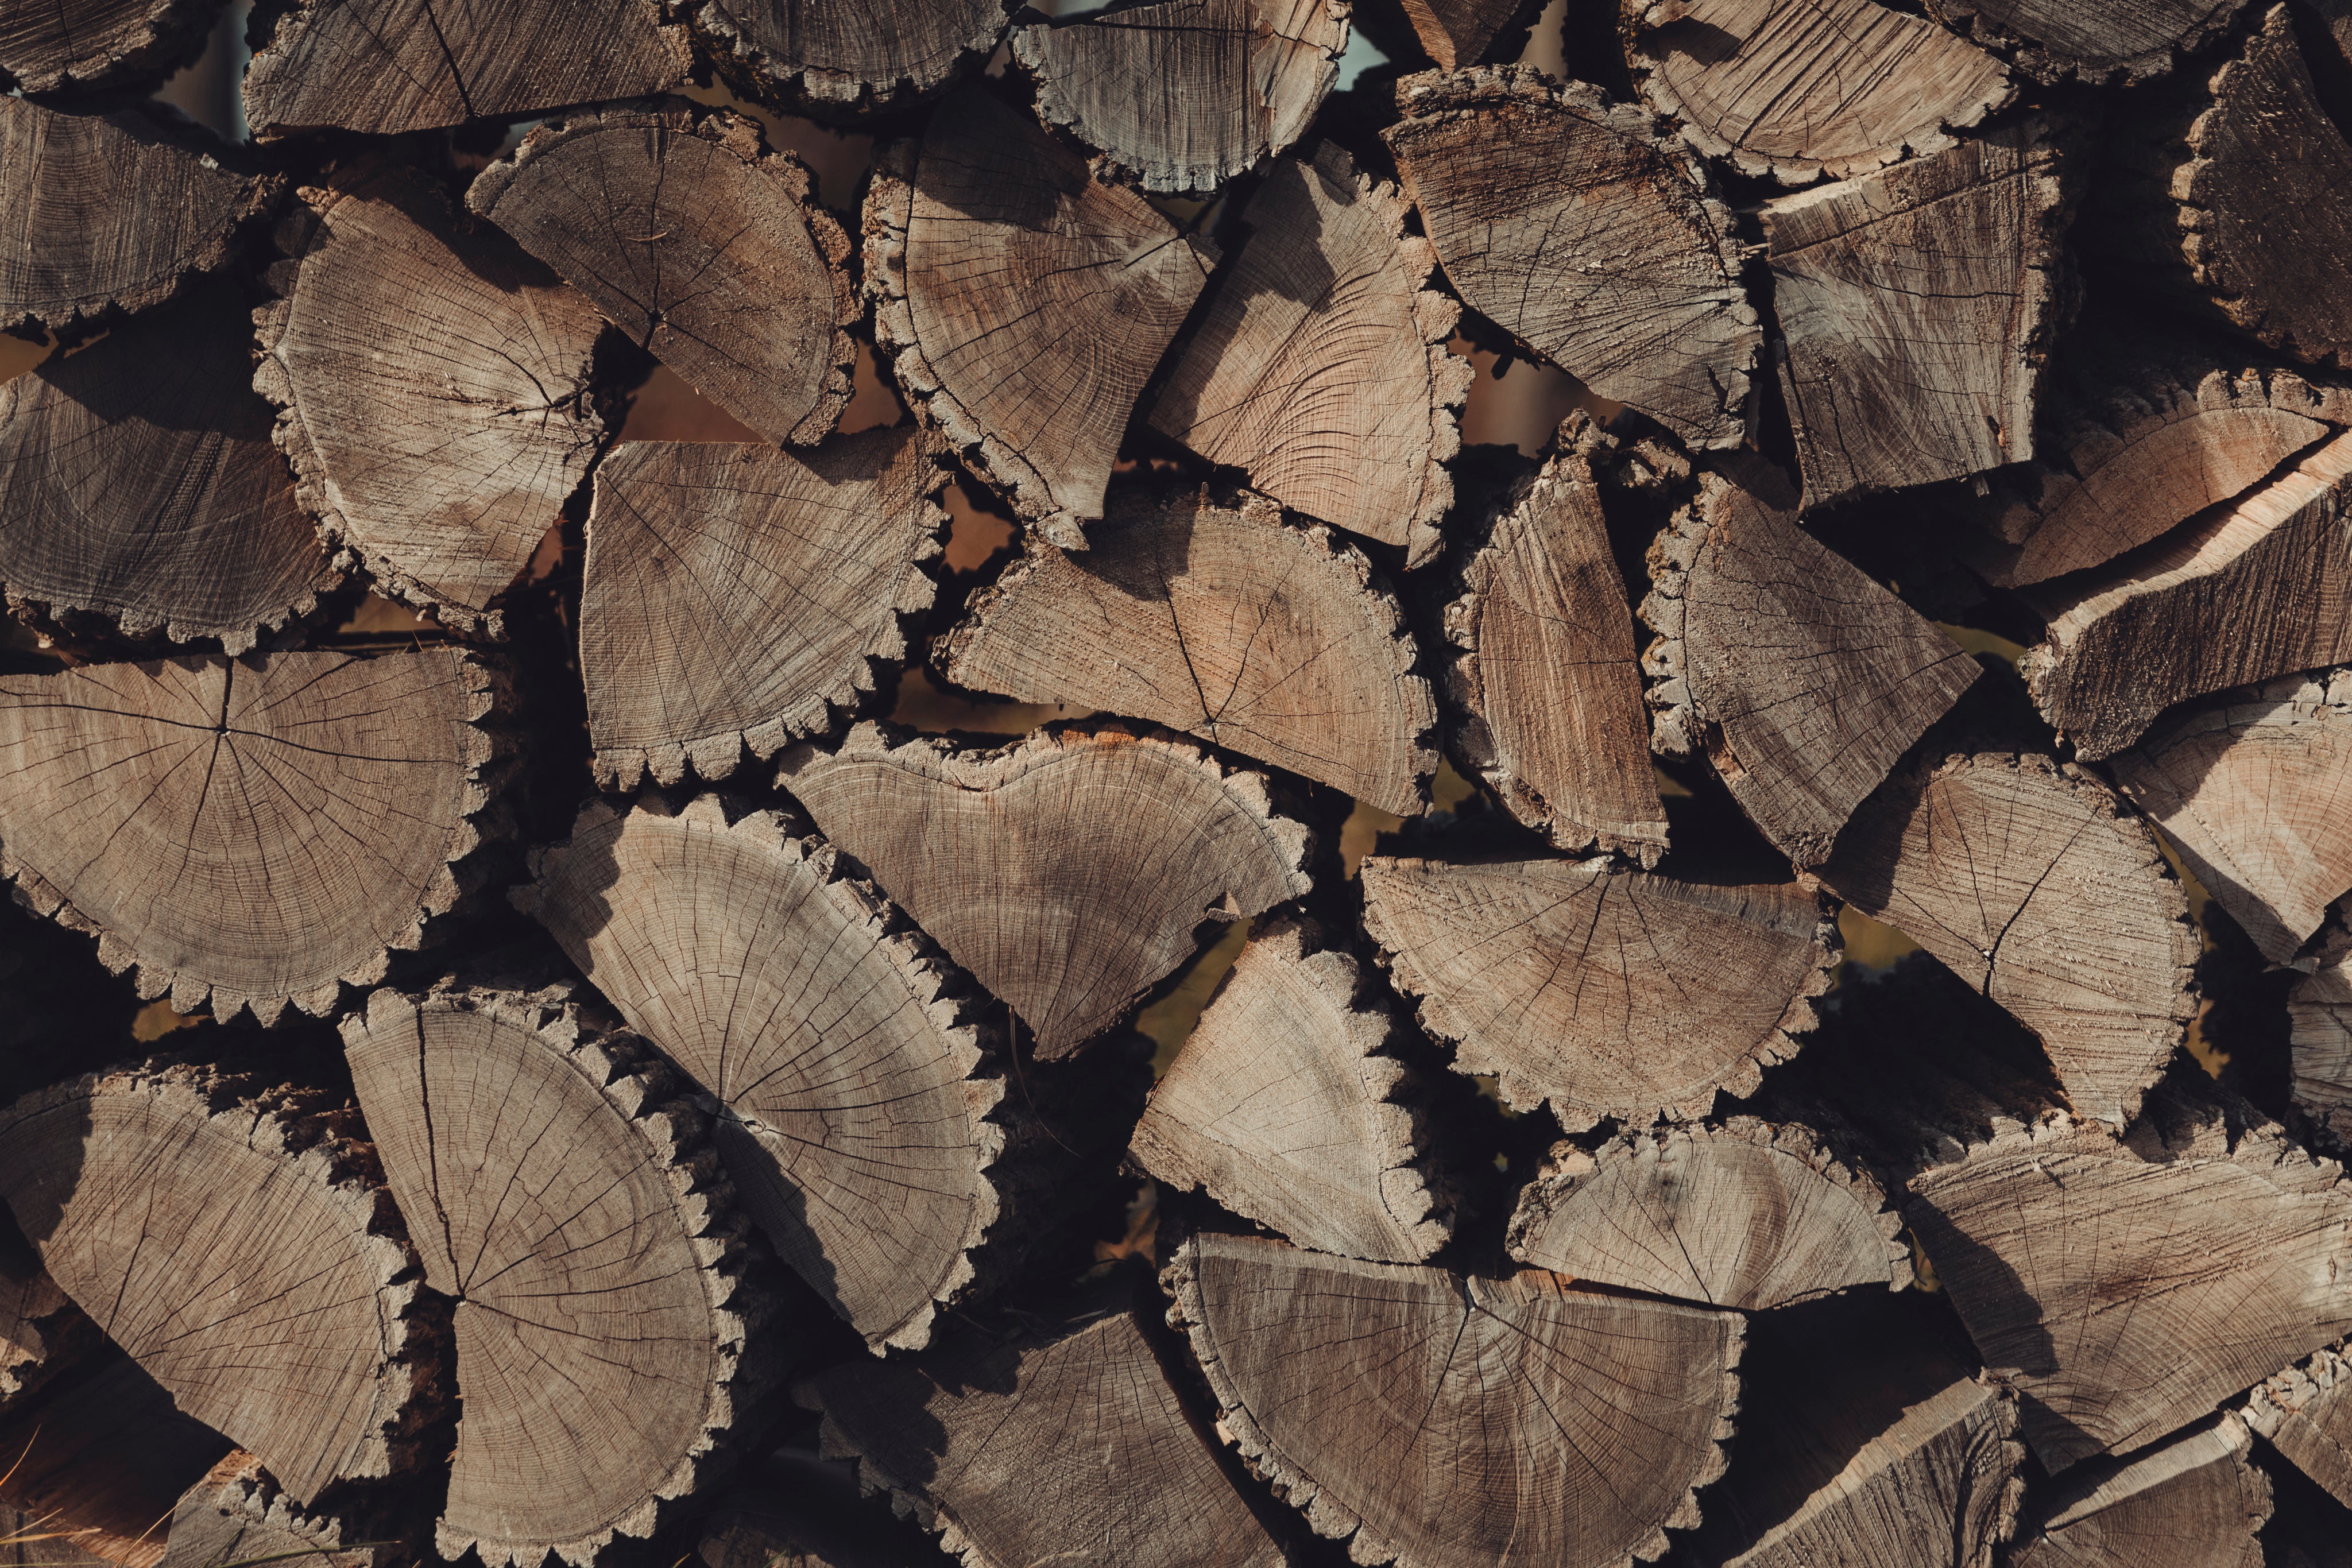 stacked-fire-wood-in-pattern.jpg